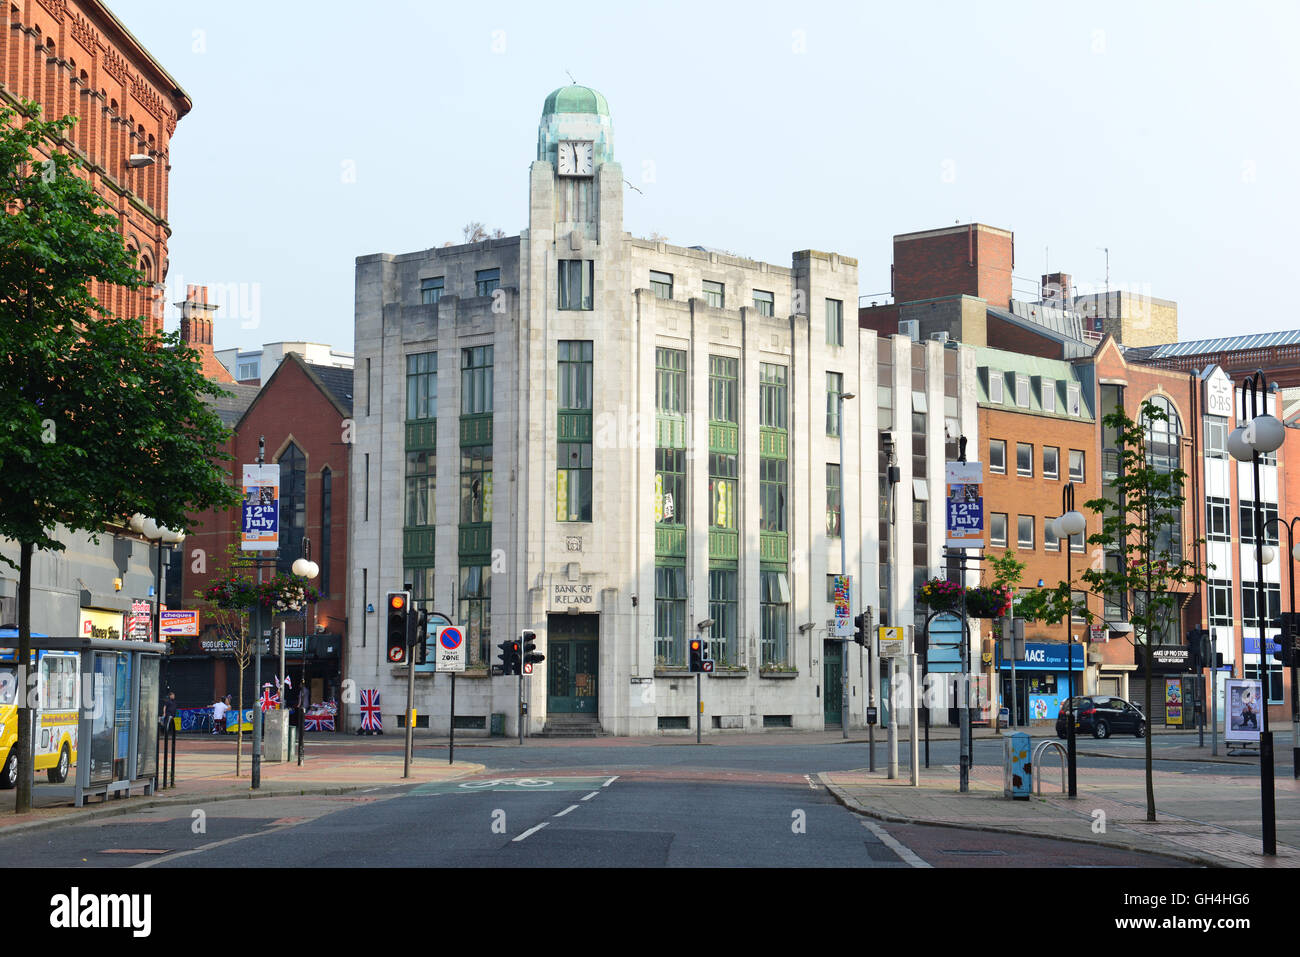 Bank of Ireland, Belfast Stock Photo